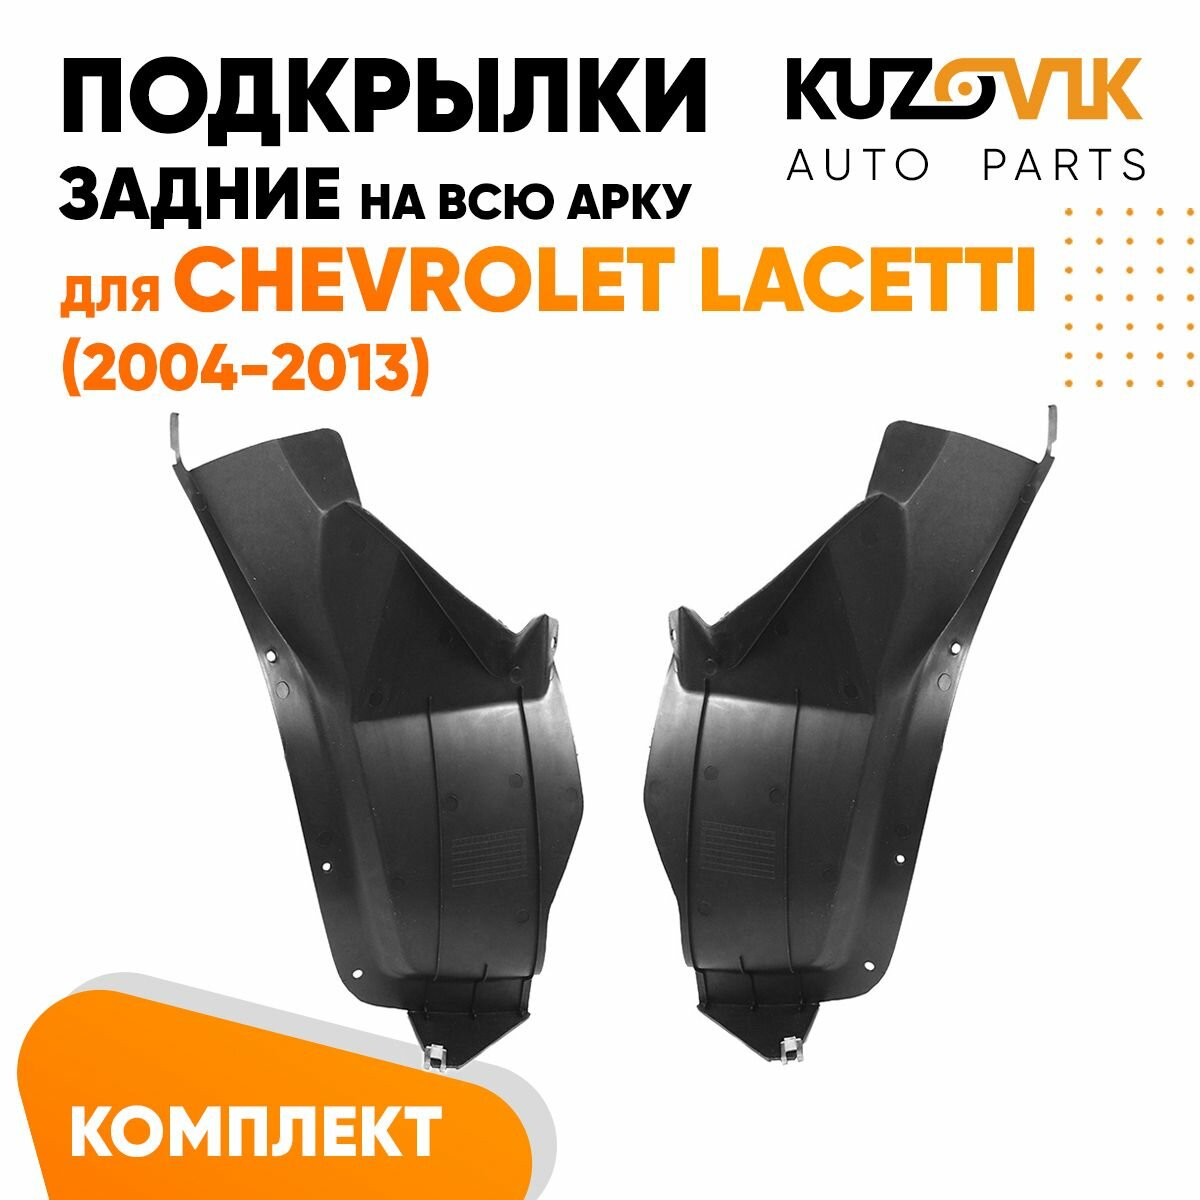 Подкрылки задние для Шевроле Лачетти Chevrolet Lacetti (2004-2013) на всю арку комплект левый + правый 2 штуки, локер, защита крыла